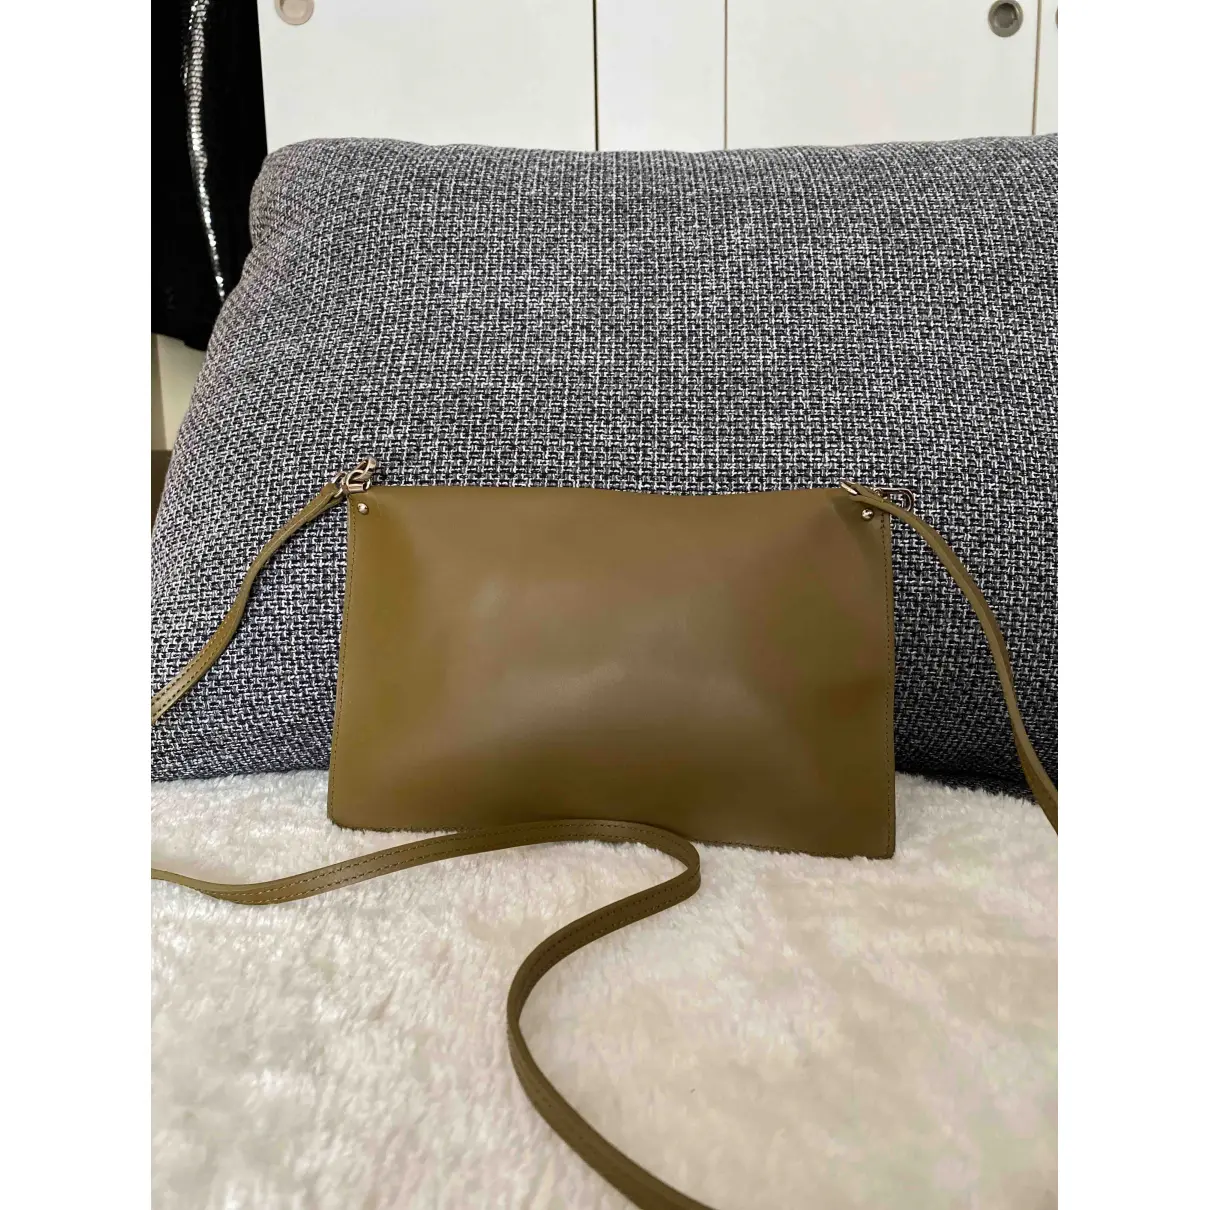 Buy Lancaster Leather clutch bag online